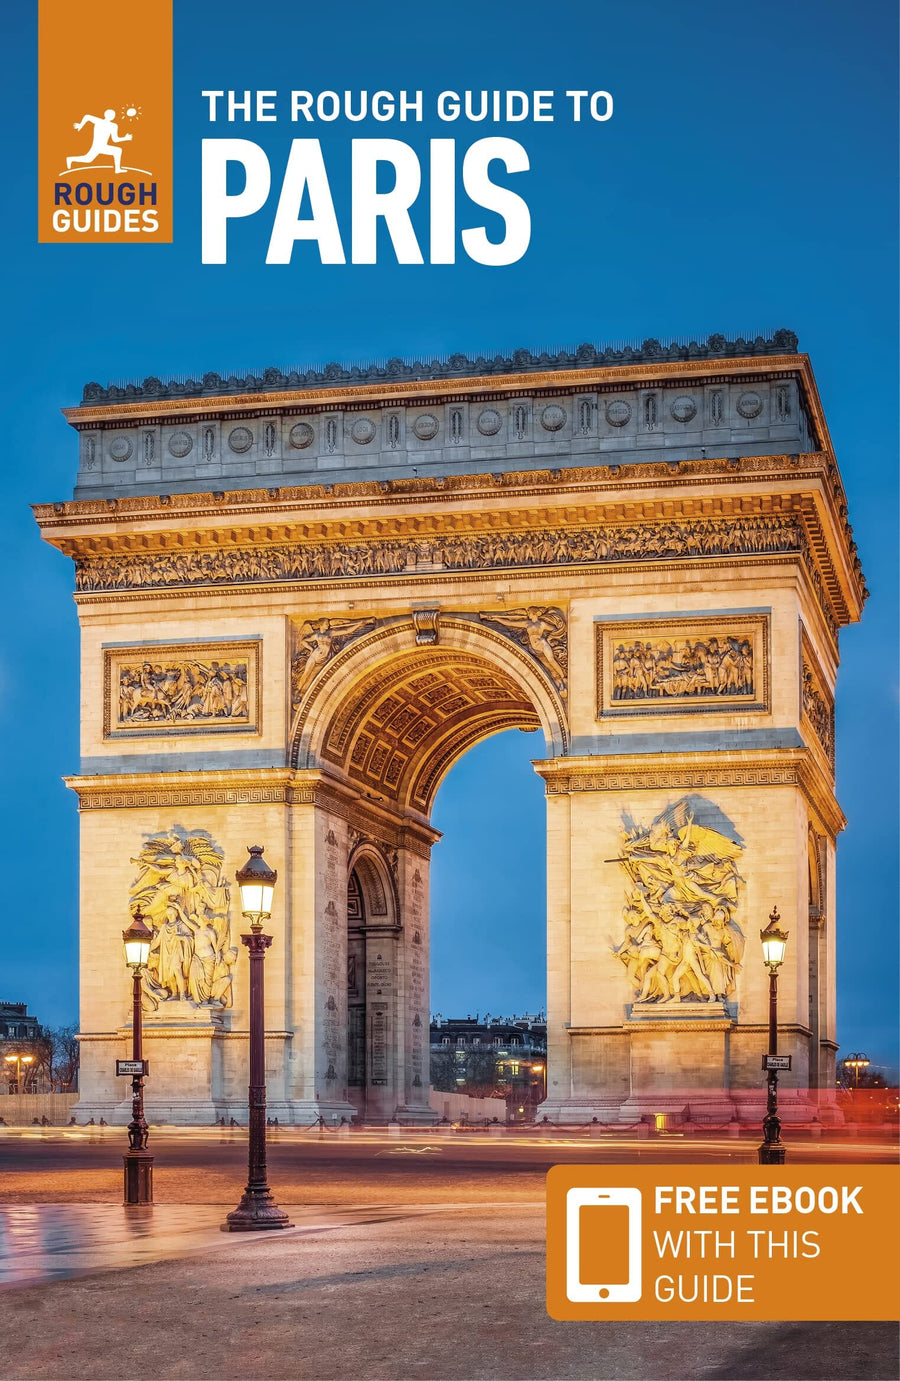 Guide de voyage (en anglais) - Paris | Rough Guides guide de voyage Rough Guides 